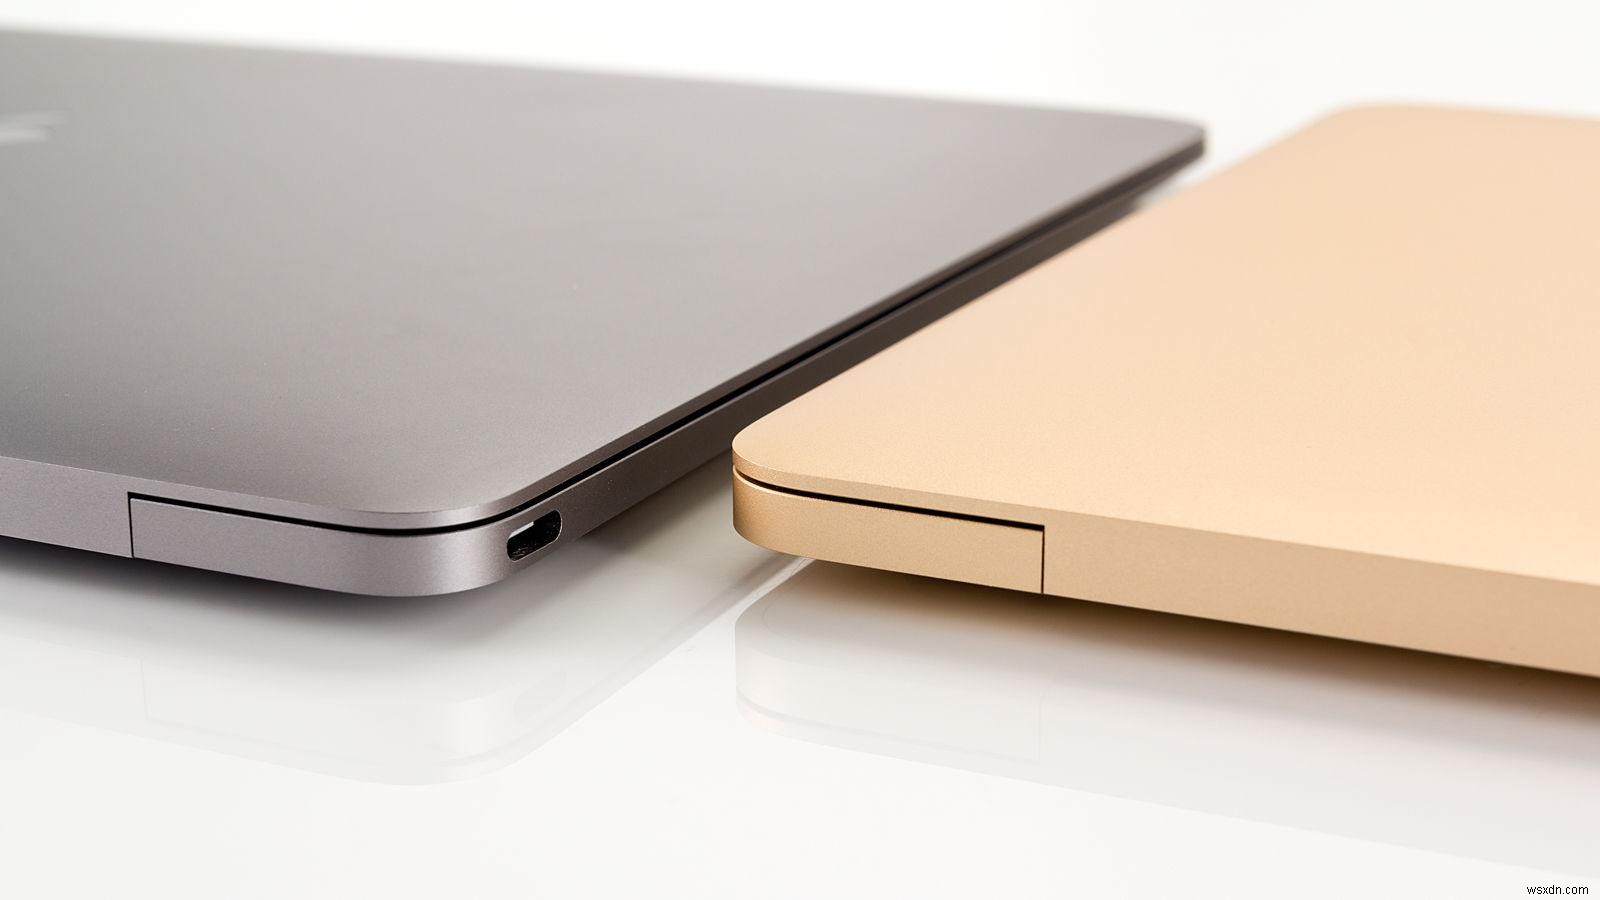 কিভাবে একটি MacBook ব্যাটারি পরীক্ষা করবেন:এটি প্রতিস্থাপন এবং প্রতিস্থাপন প্রয়োজন কিনা দেখুন 